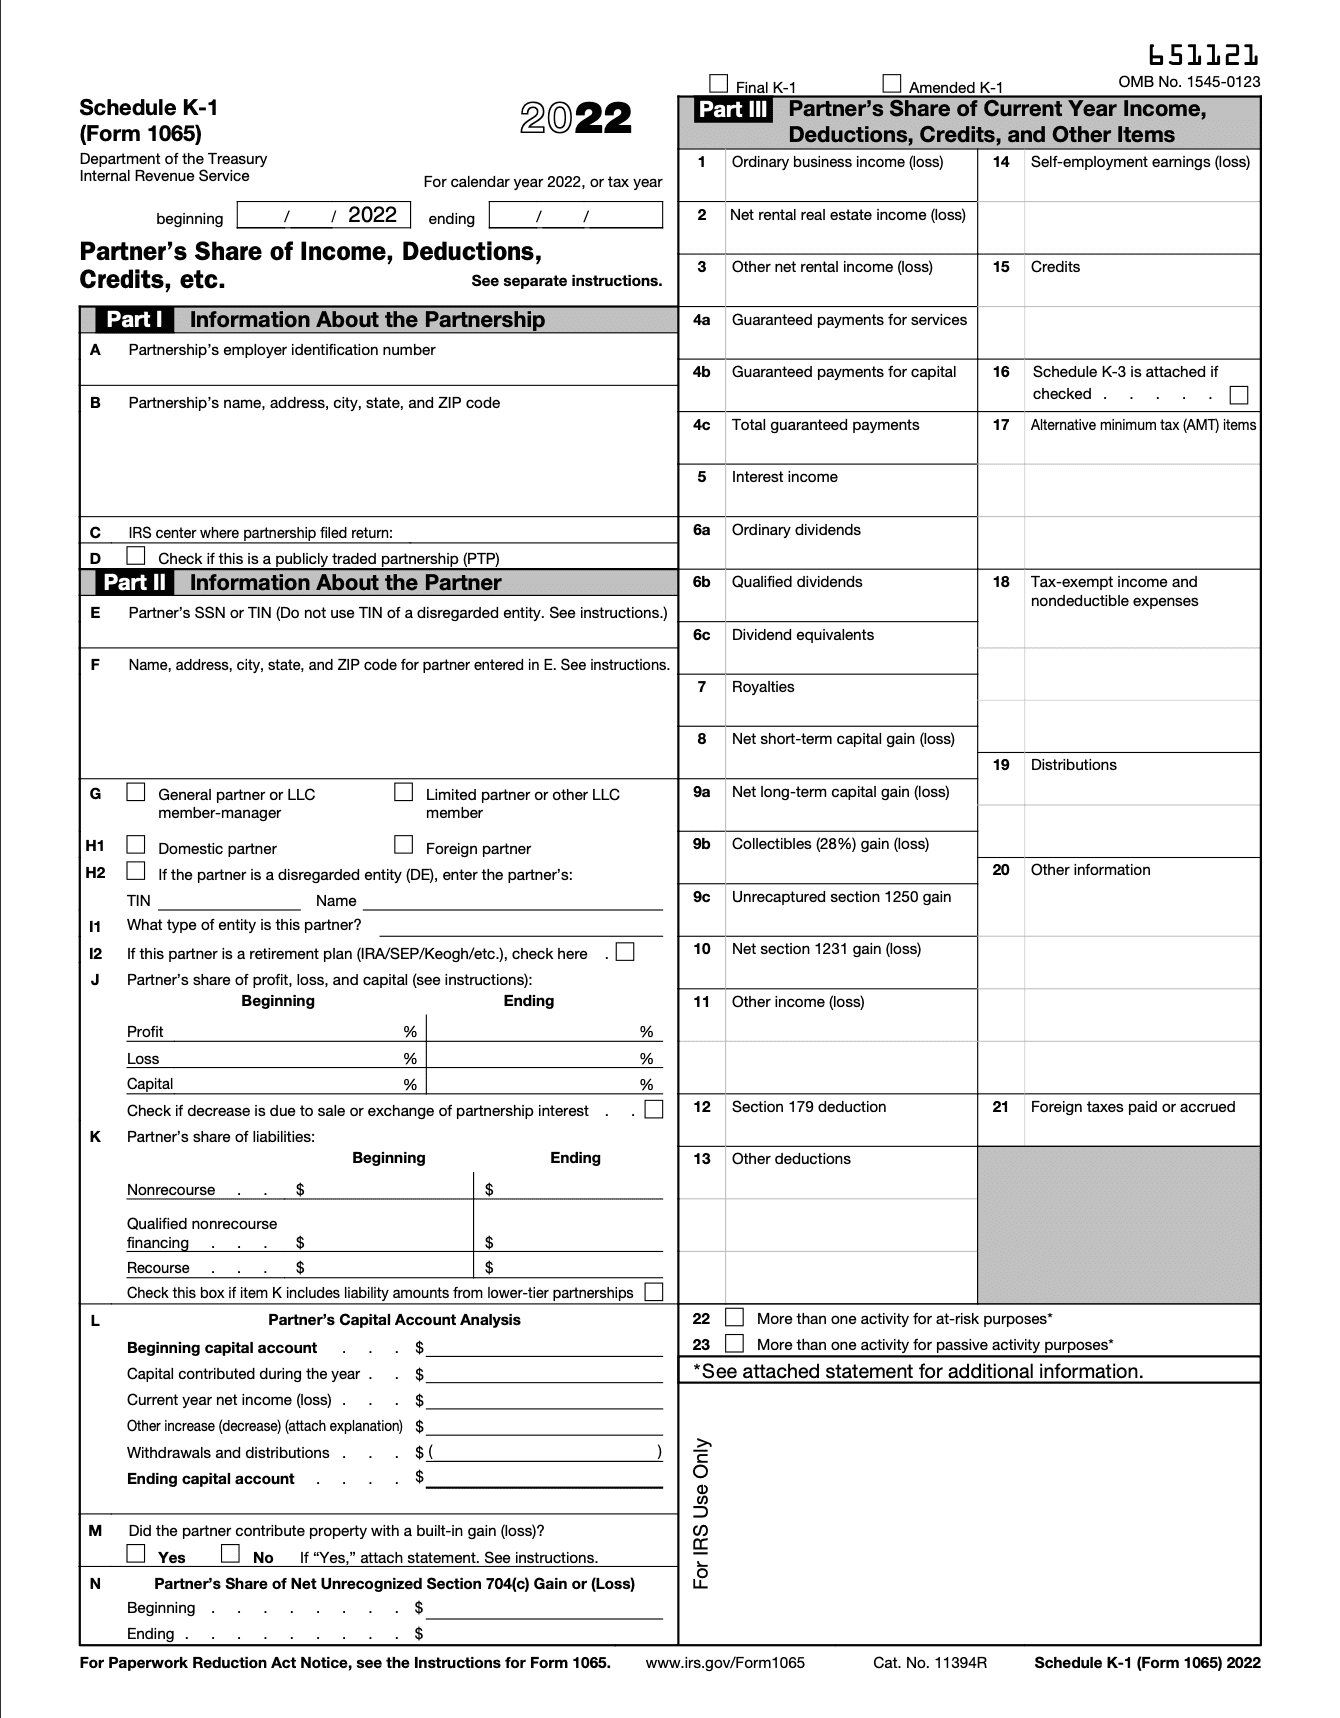 schedule-k-1-form-part1.png